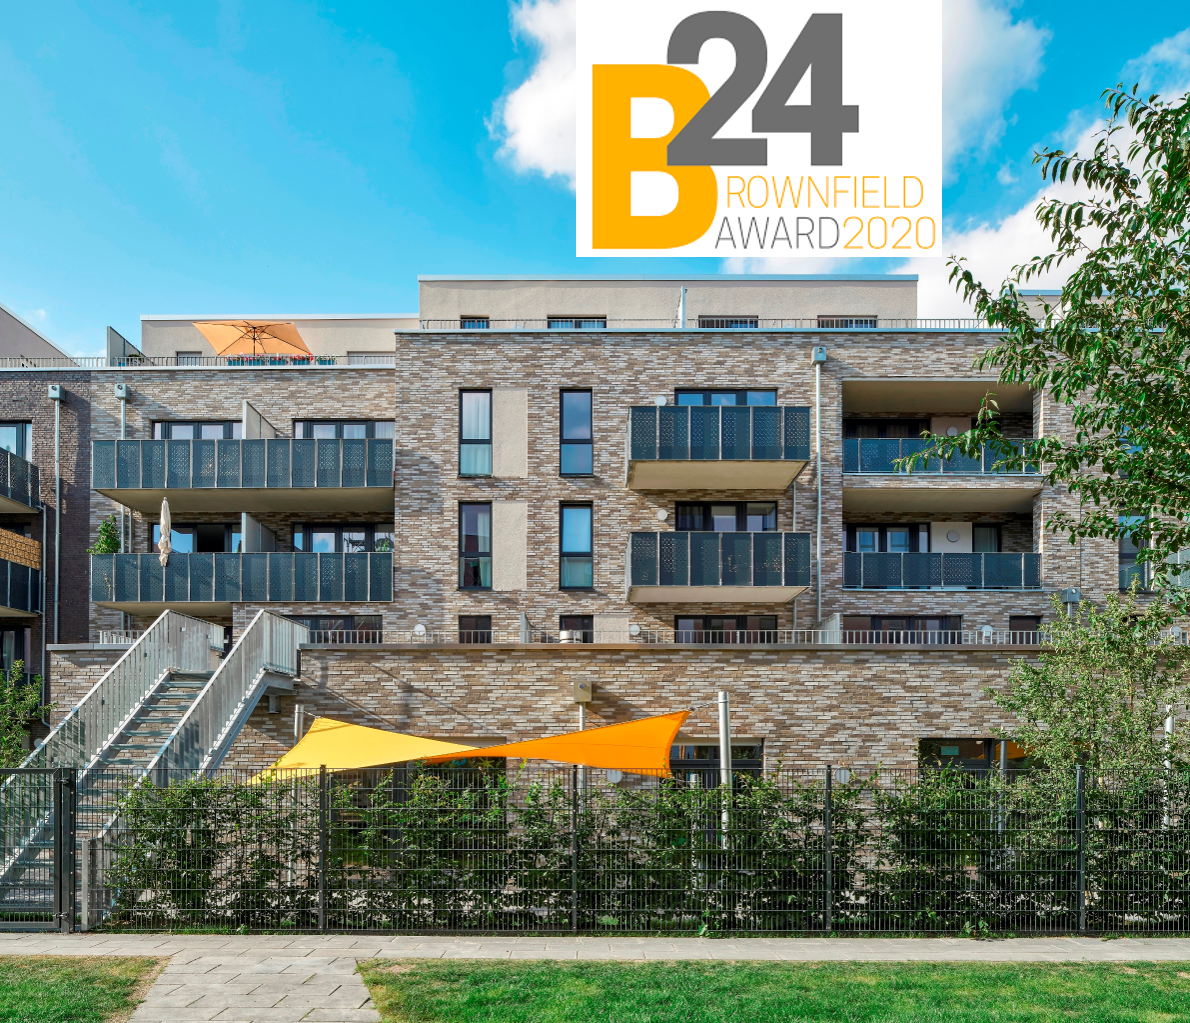 Wohnquartier Guter Freund gewinnt den B24 Brownfield Award.png
		